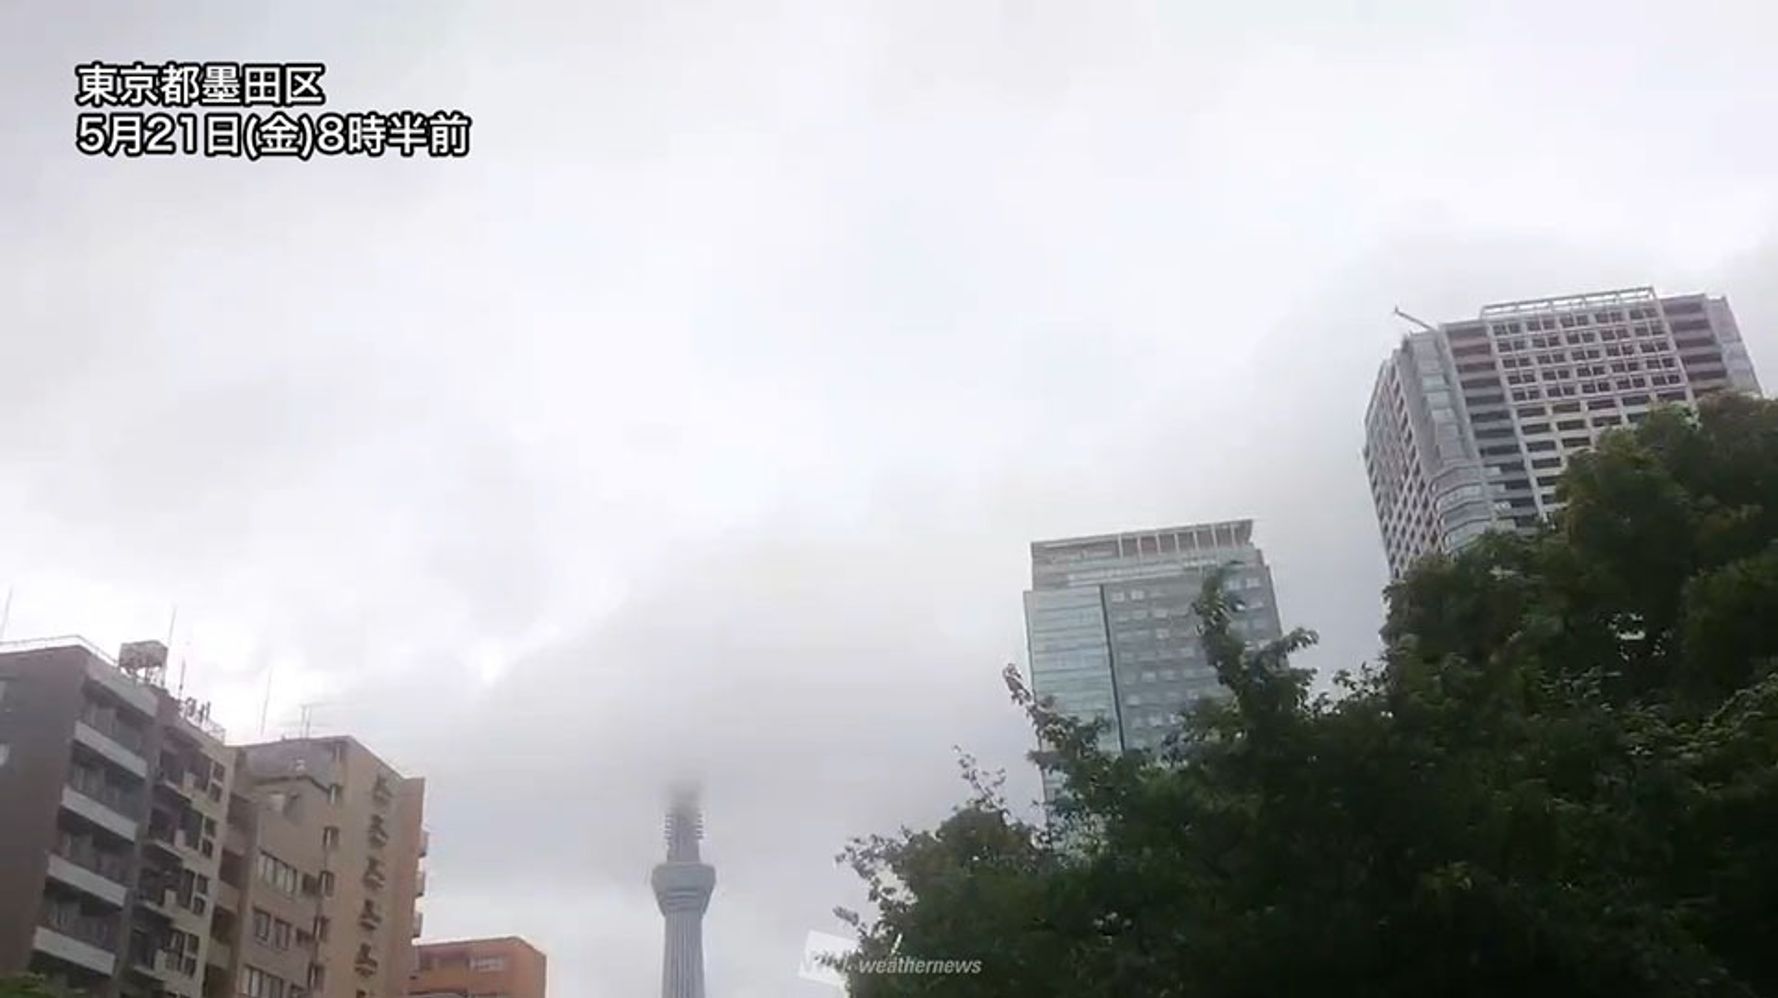 午後の関東 東京の天気は 傘を煽られないように注意 ハフポスト